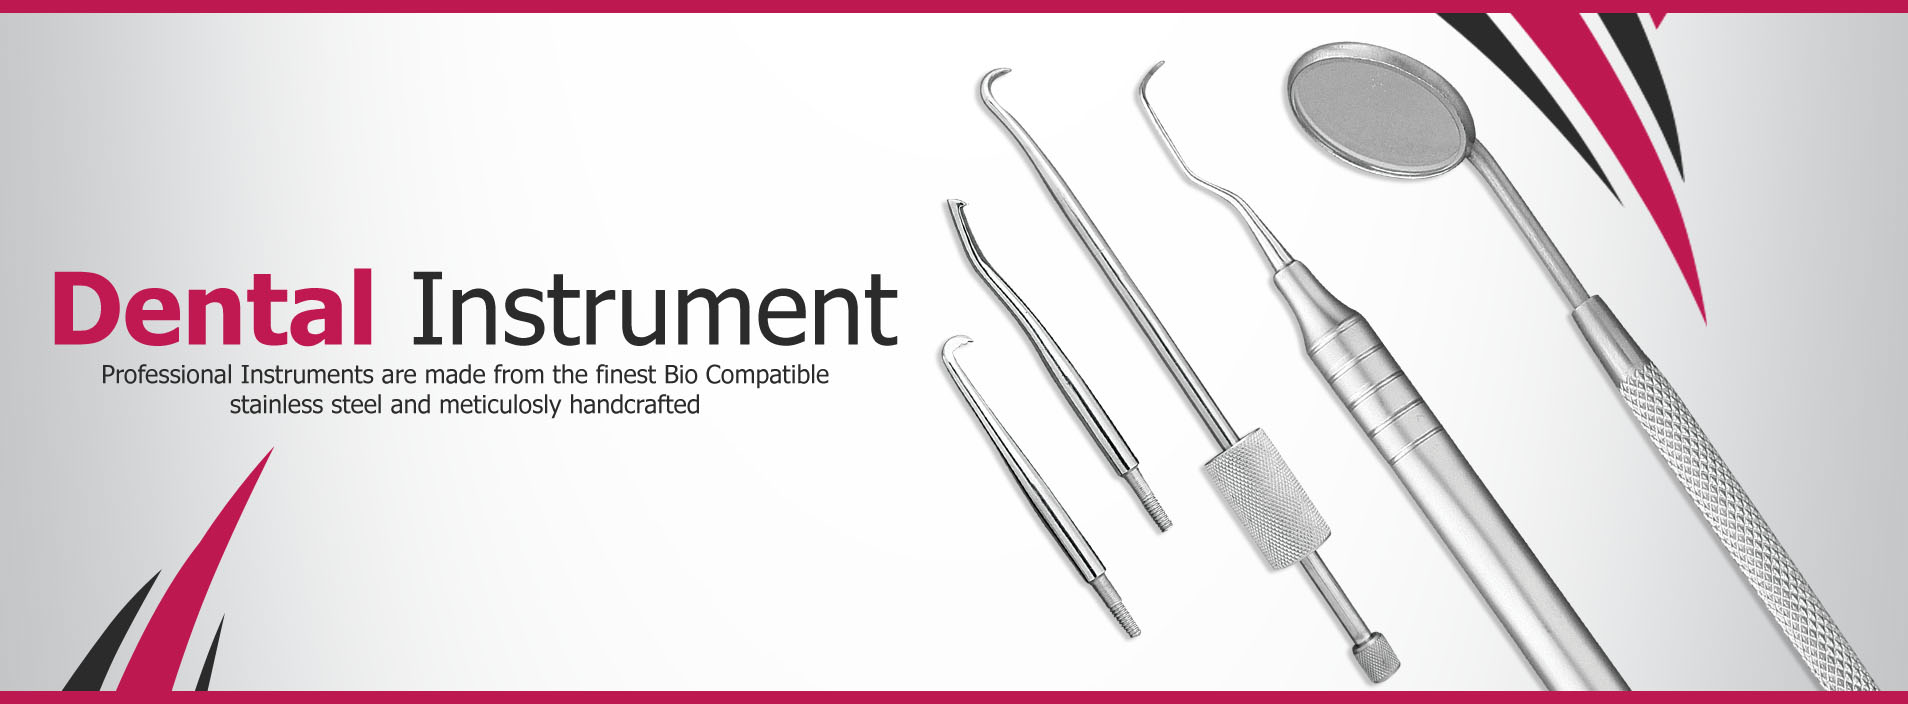 Dental Instrument